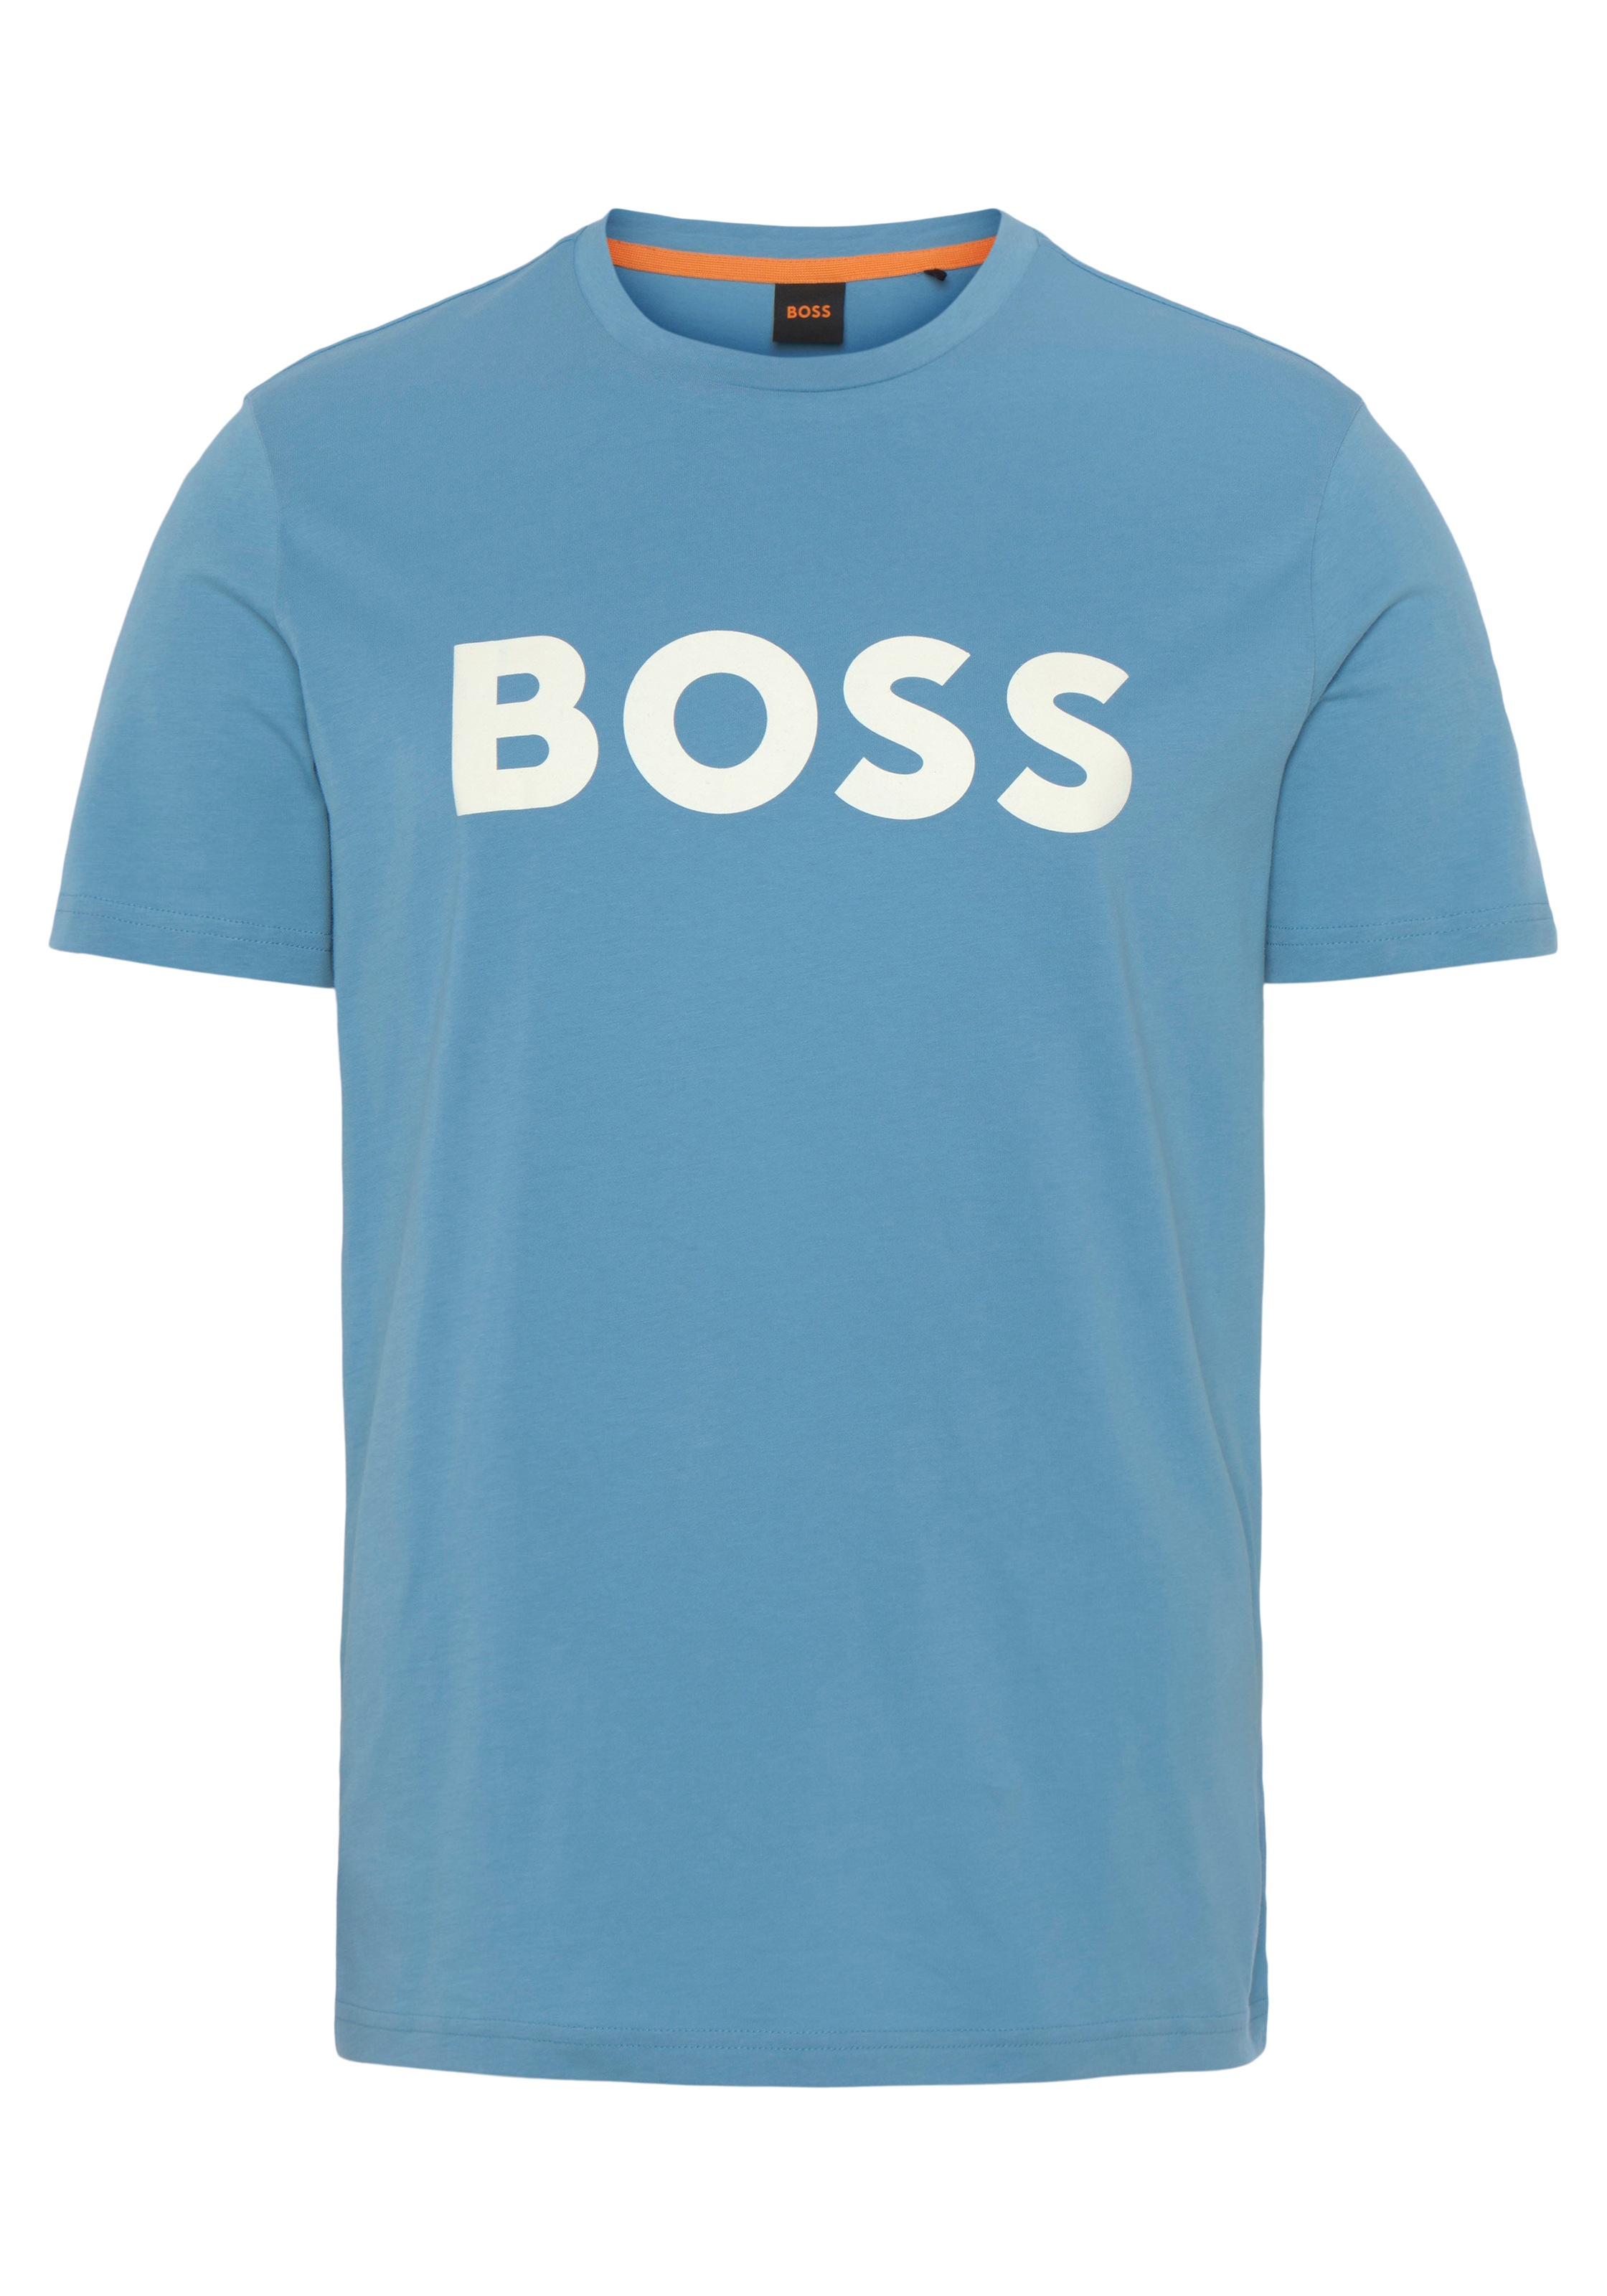 BOSS mit 01«, BOSS 10246016 »Thinking 1 online der Druck bei ORANGE T-Shirt großem Brust auf